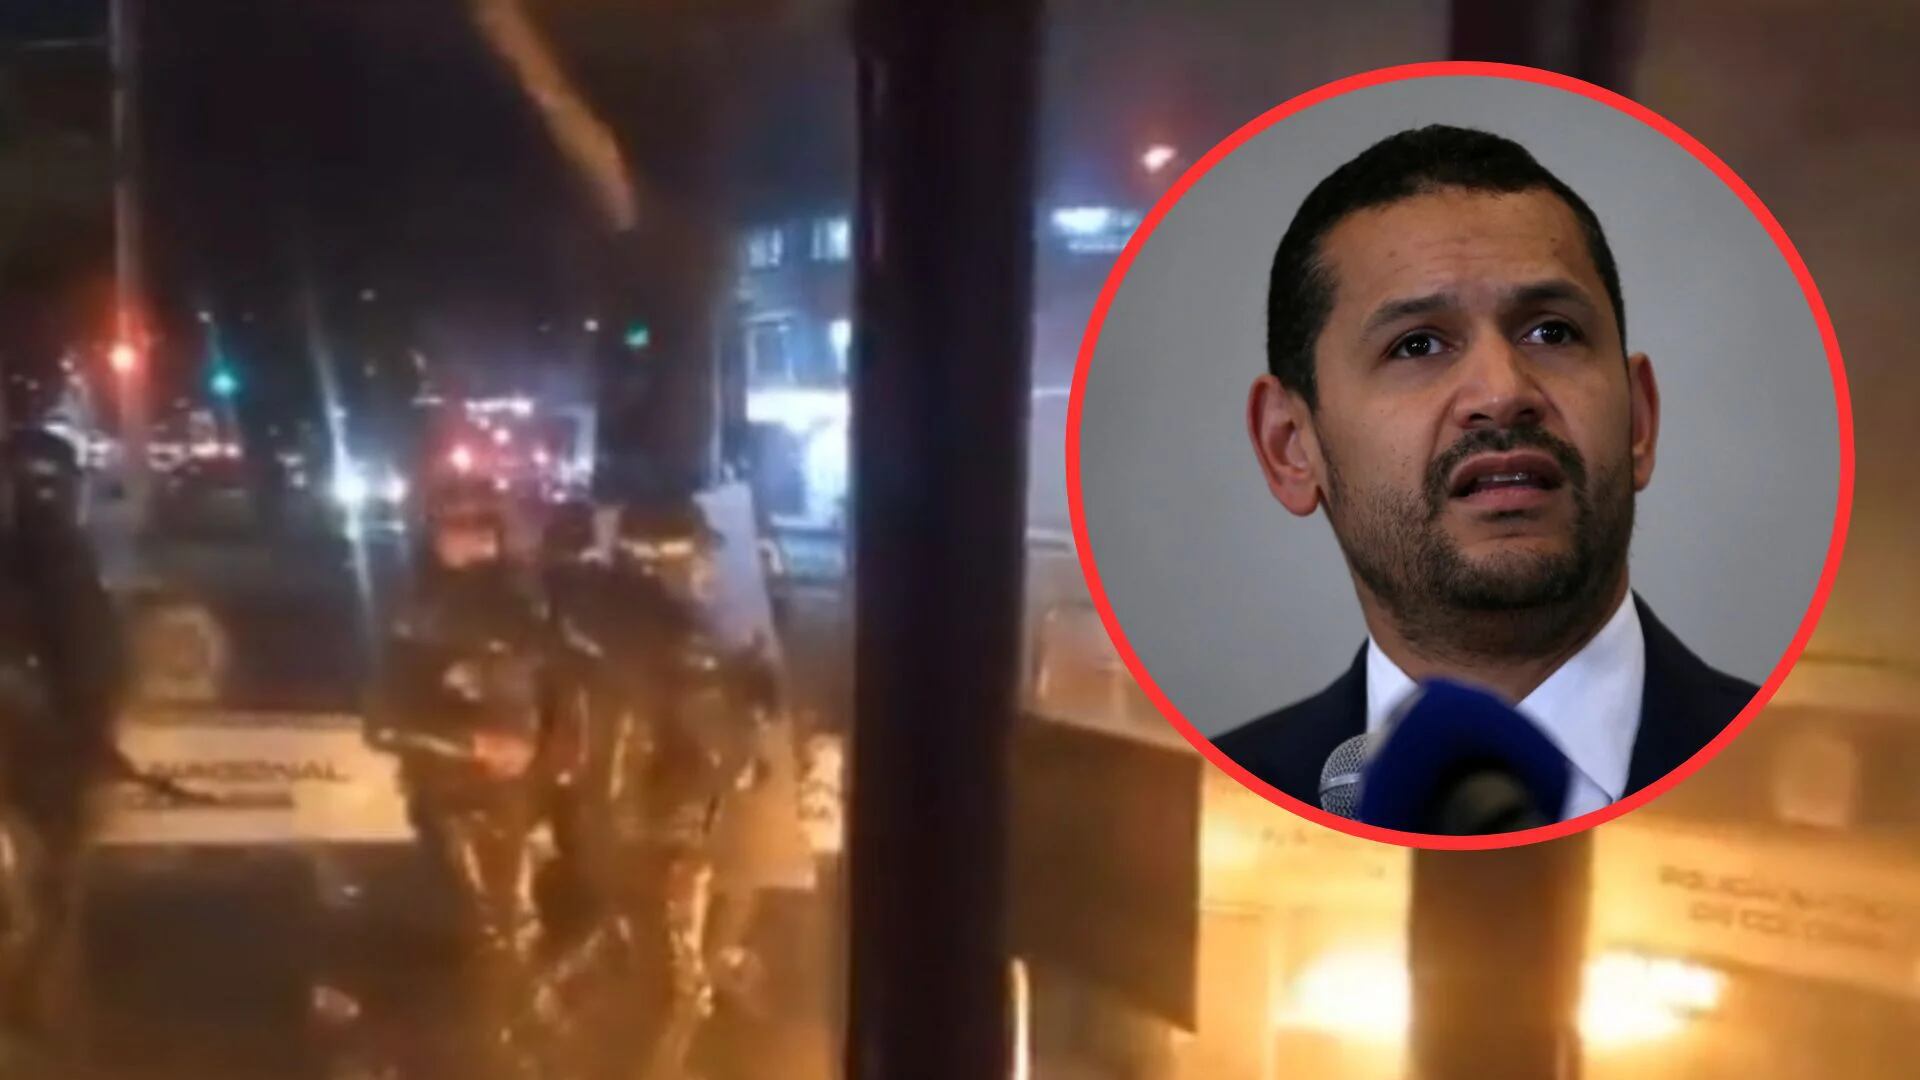 Exministro de Iván Duque se “despachó” tras ataque a CAI en Bogotá: “Delincuentes quieren quemar policías vivos”